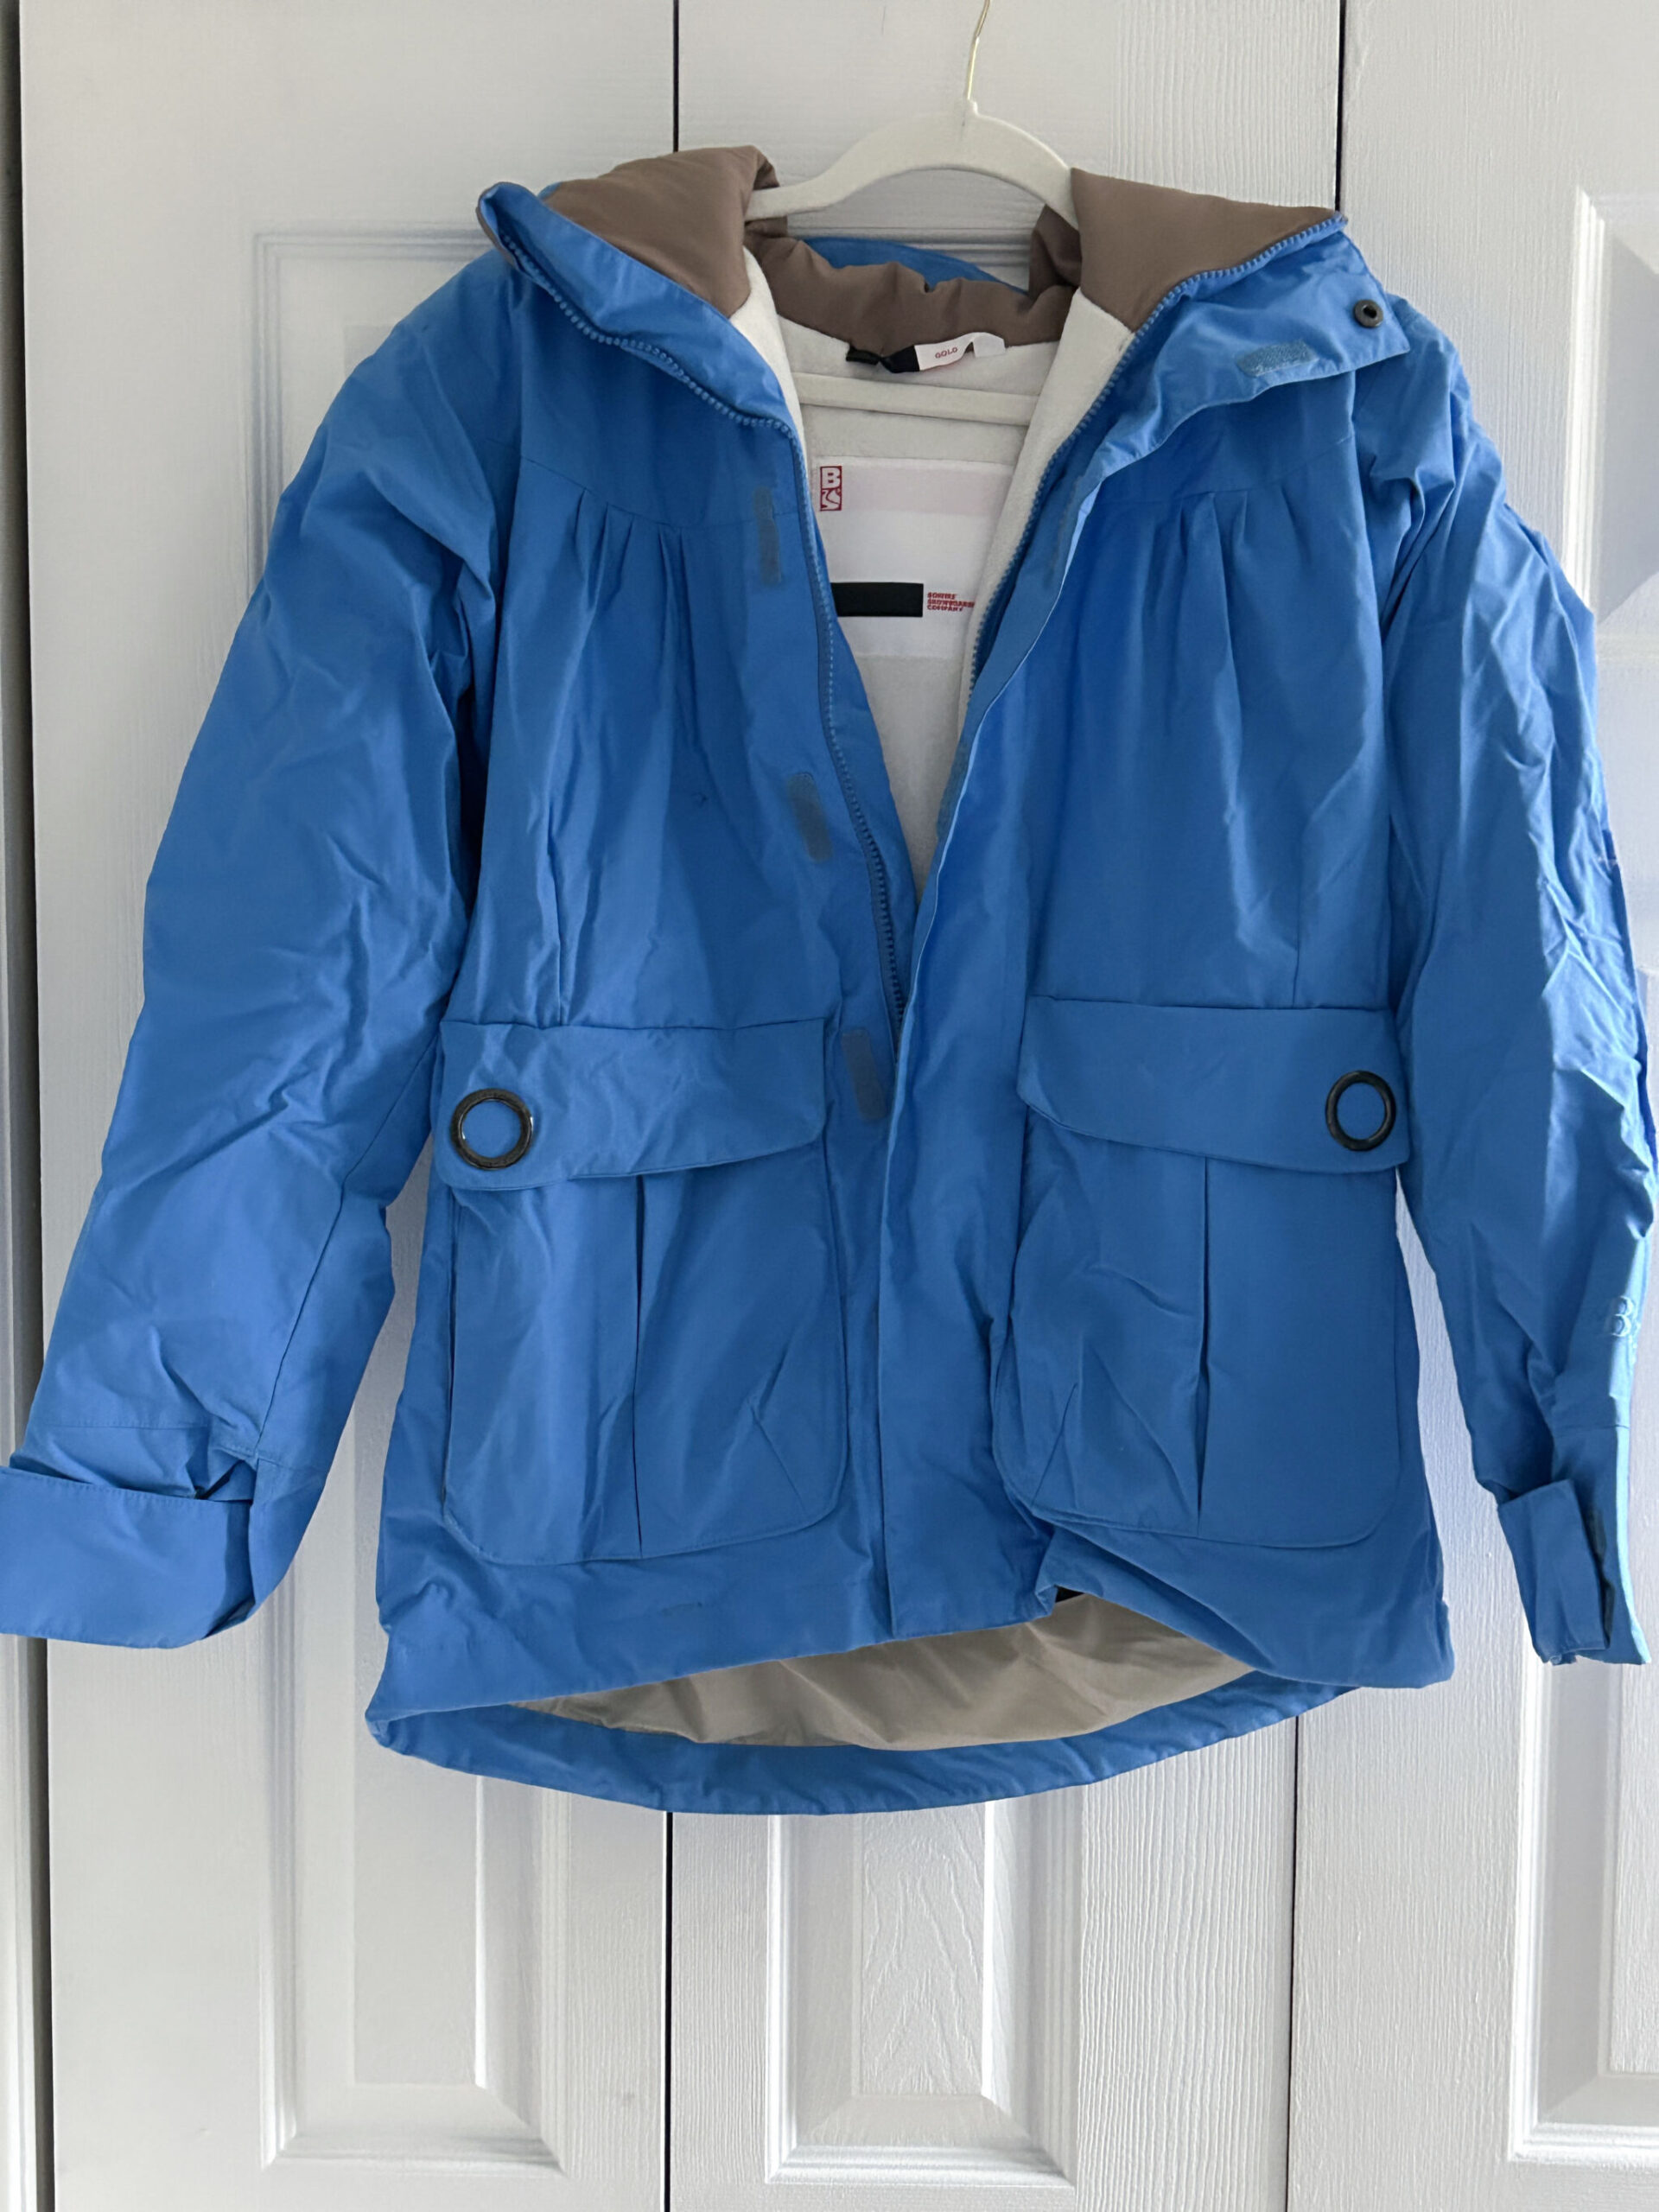 Bonfire SnowboardSki Jacket Size M - Merideth Morgan